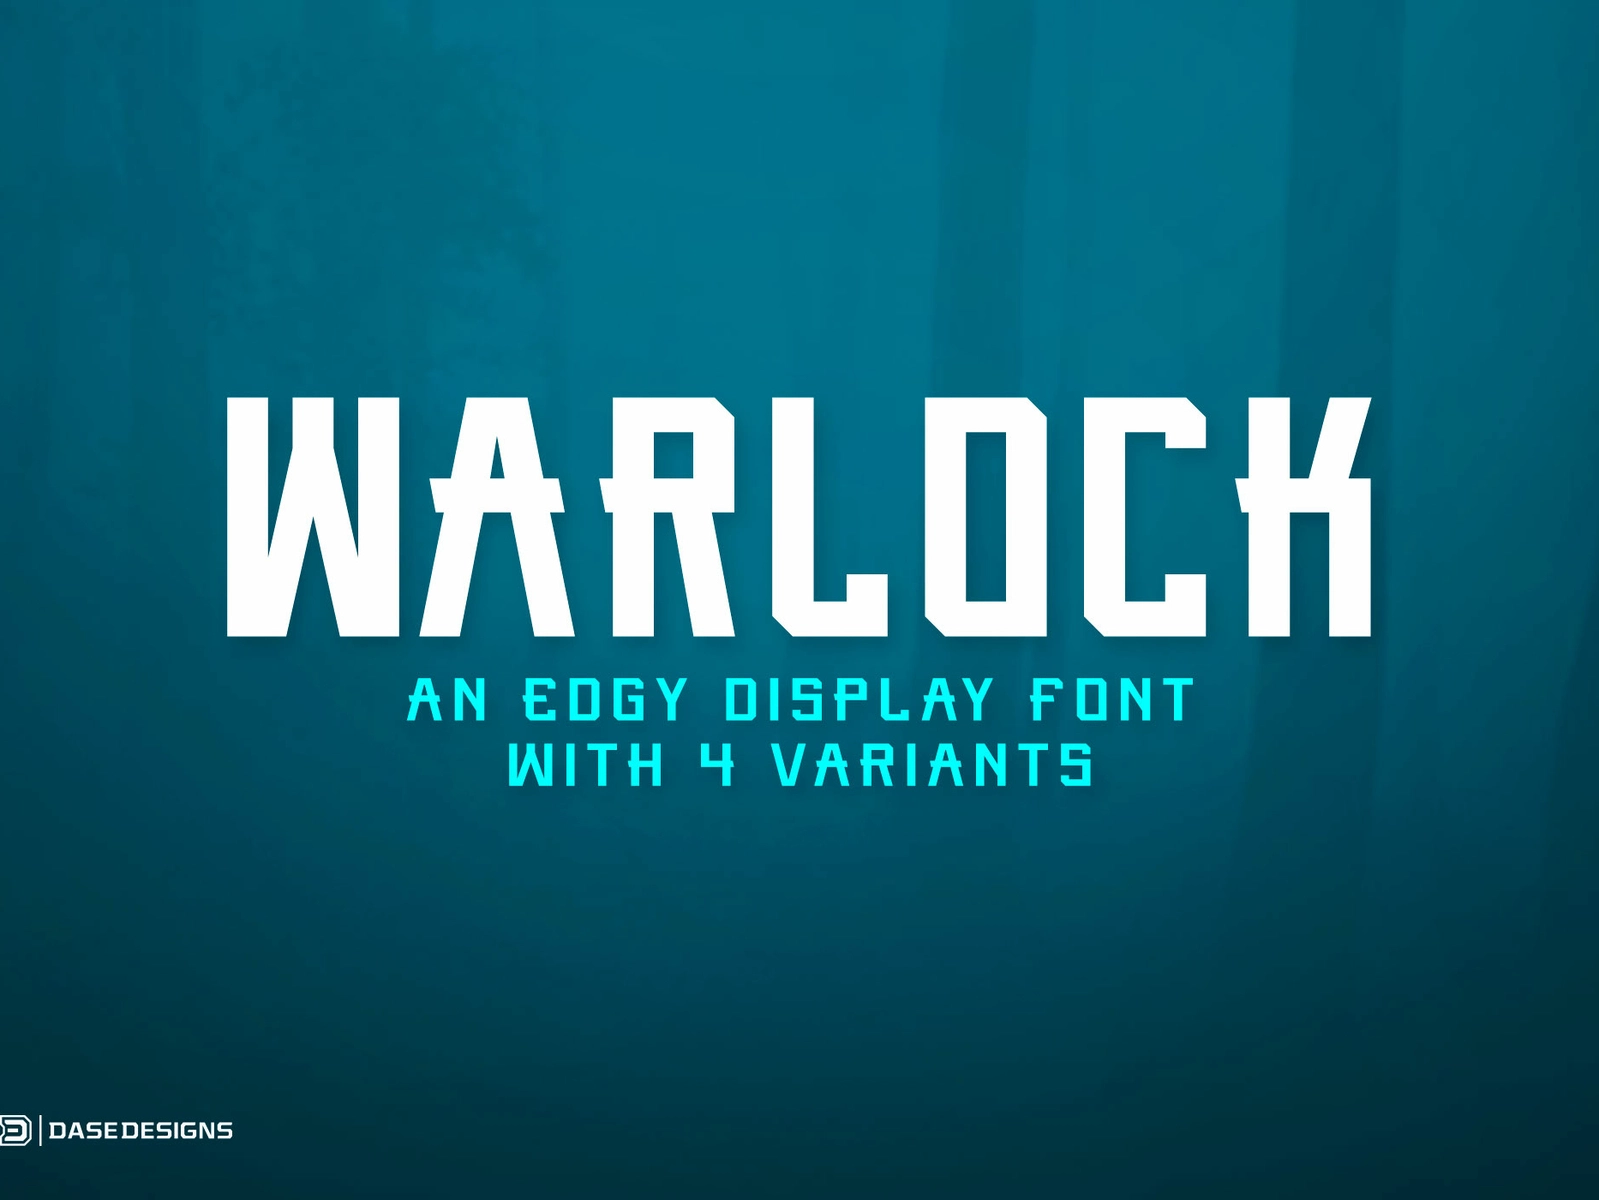 Ejemplo de fuente Warlock Regular